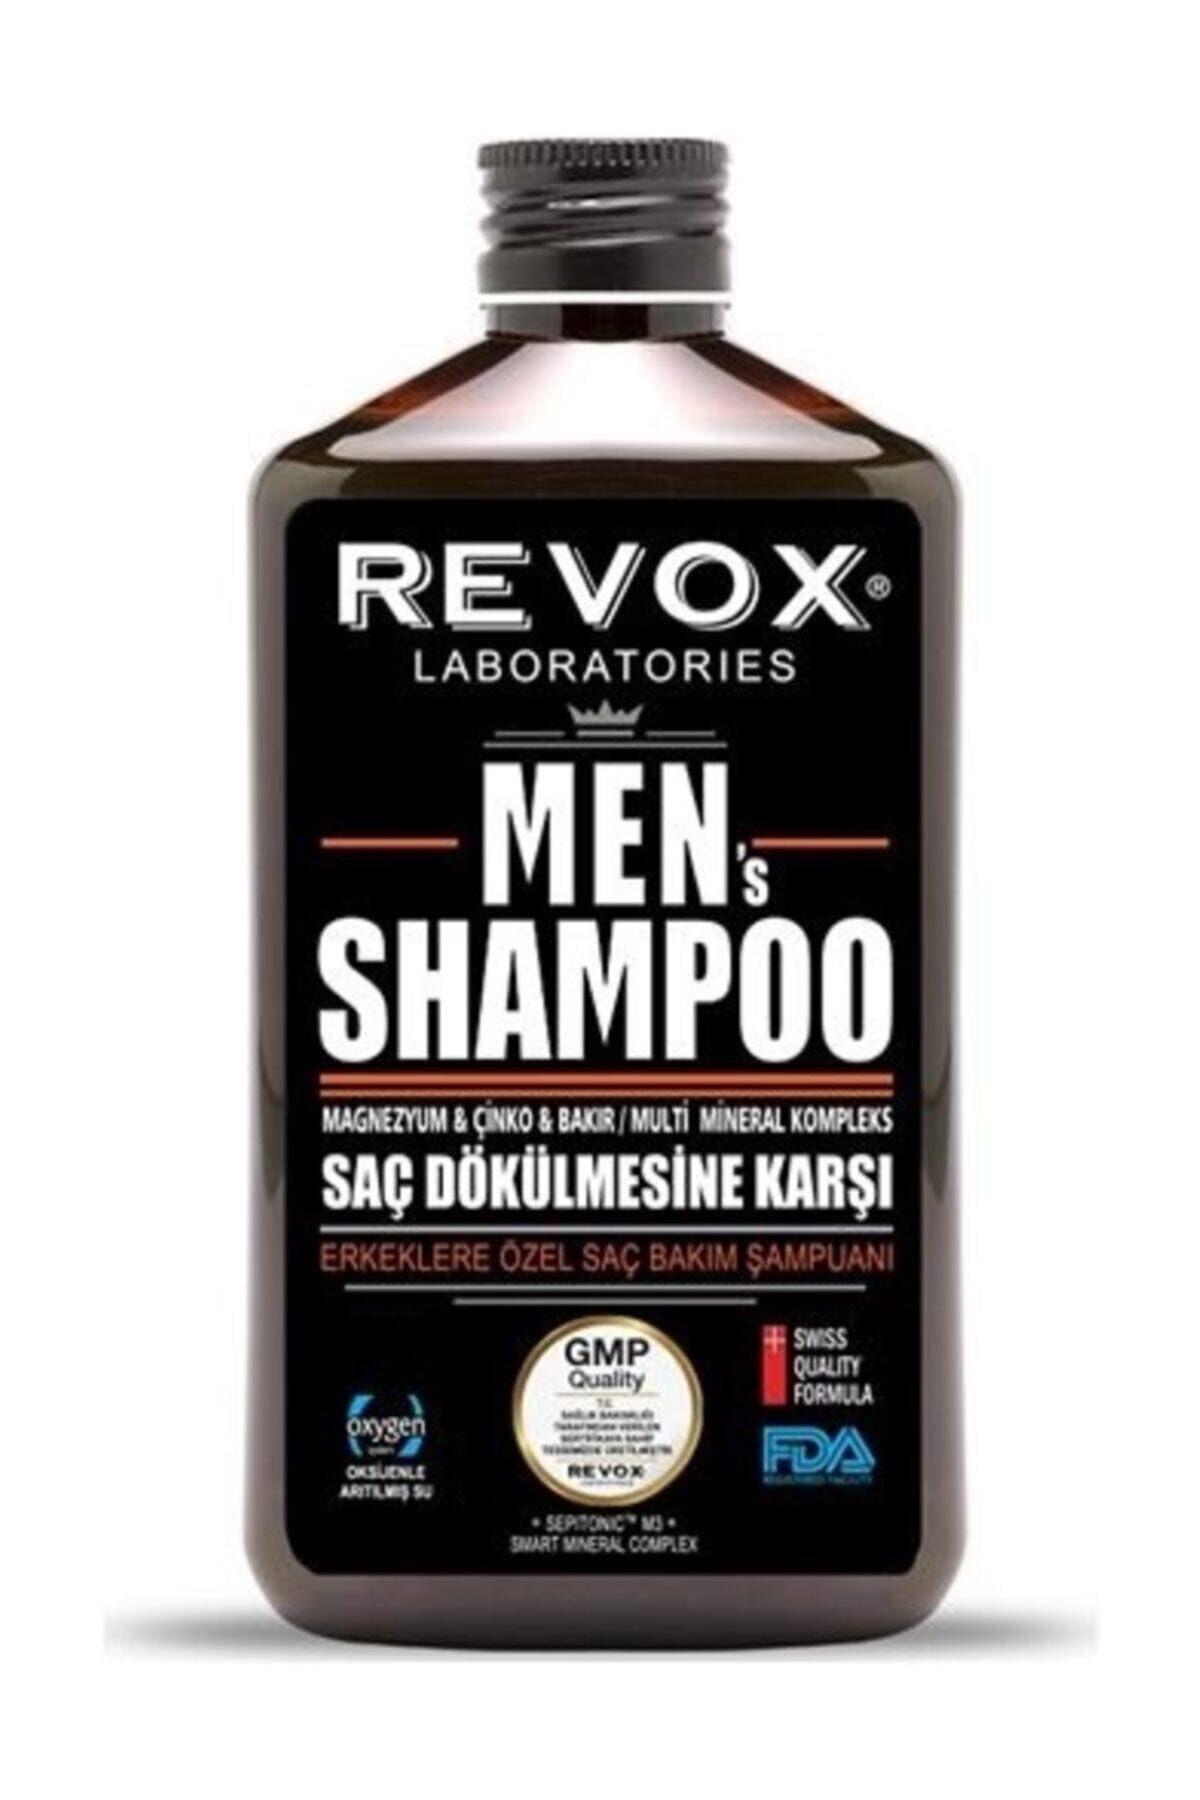 Revox Erkeklere Özel Saç Dökülmesine Karşı Fda Gmp Şampuan 400 ml